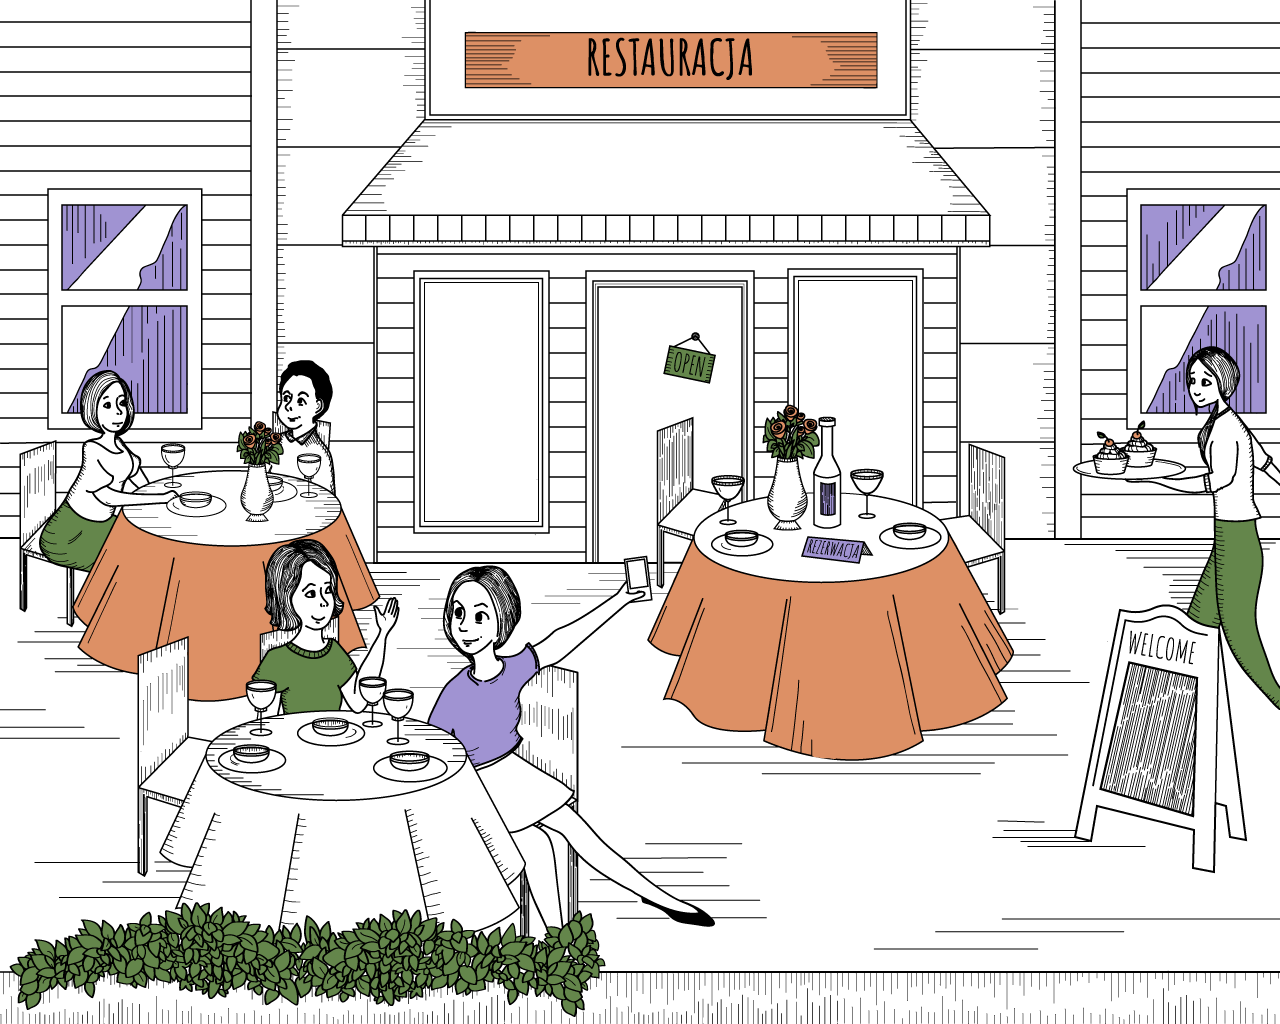 Ilustracja przedstawiająca restauracje